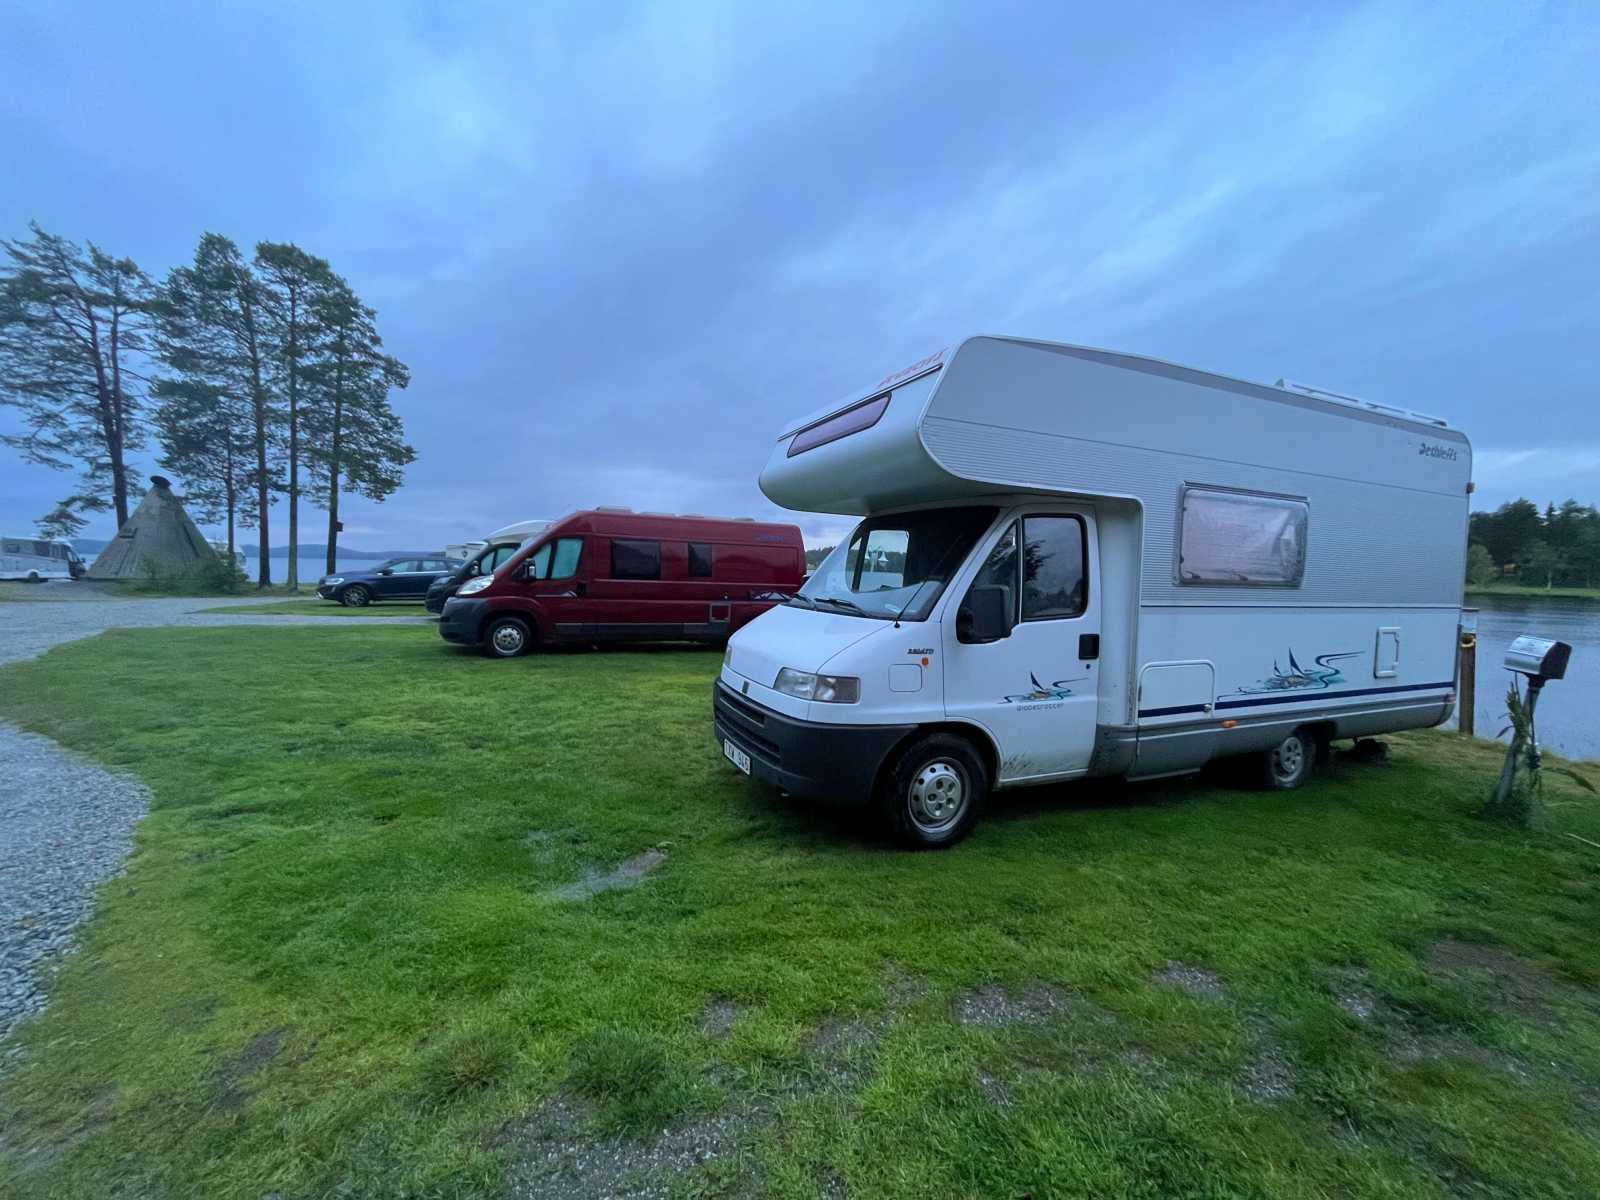 Kolgårdens stugby & camping, Vilhelmina, Sweden